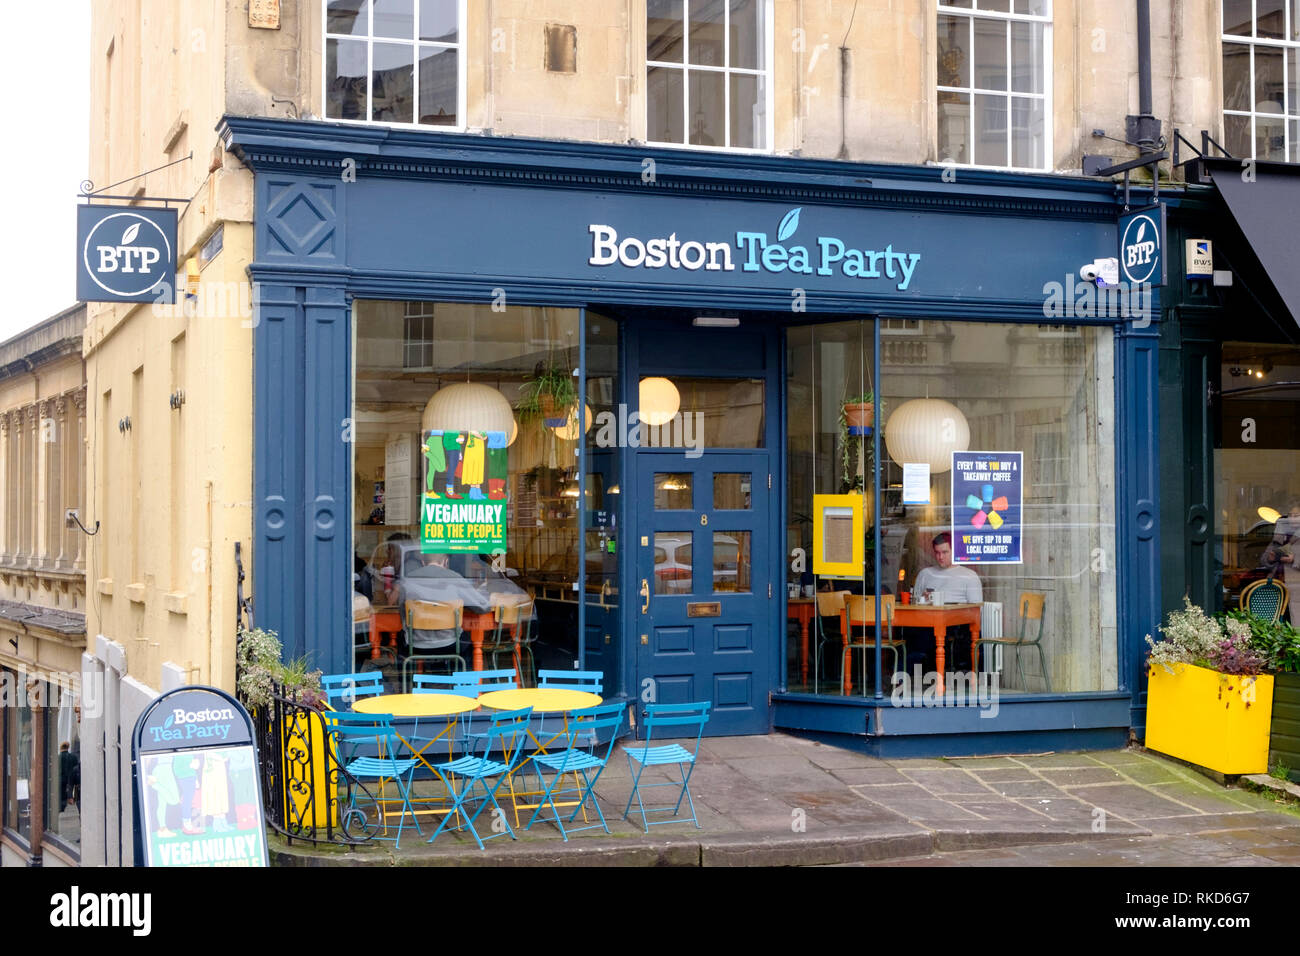 Autour de la ville historique de Bath, Somerset England UK Le Boston tea party cafe, réputé pour sa position sur la non-tasses réutilisables. Banque D'Images